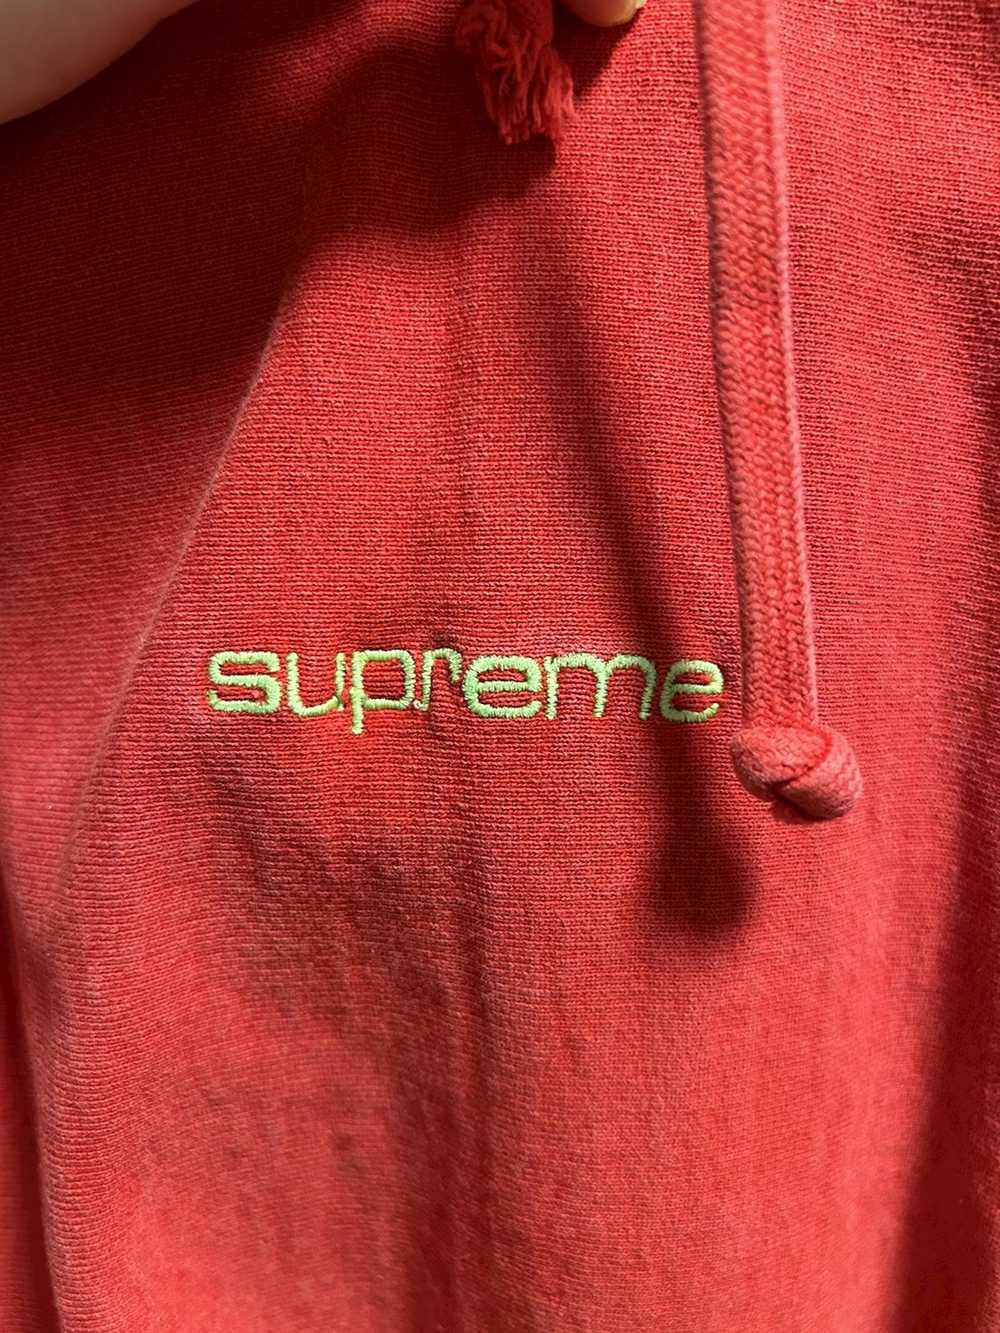 Supreme Supreme hoodie - image 3